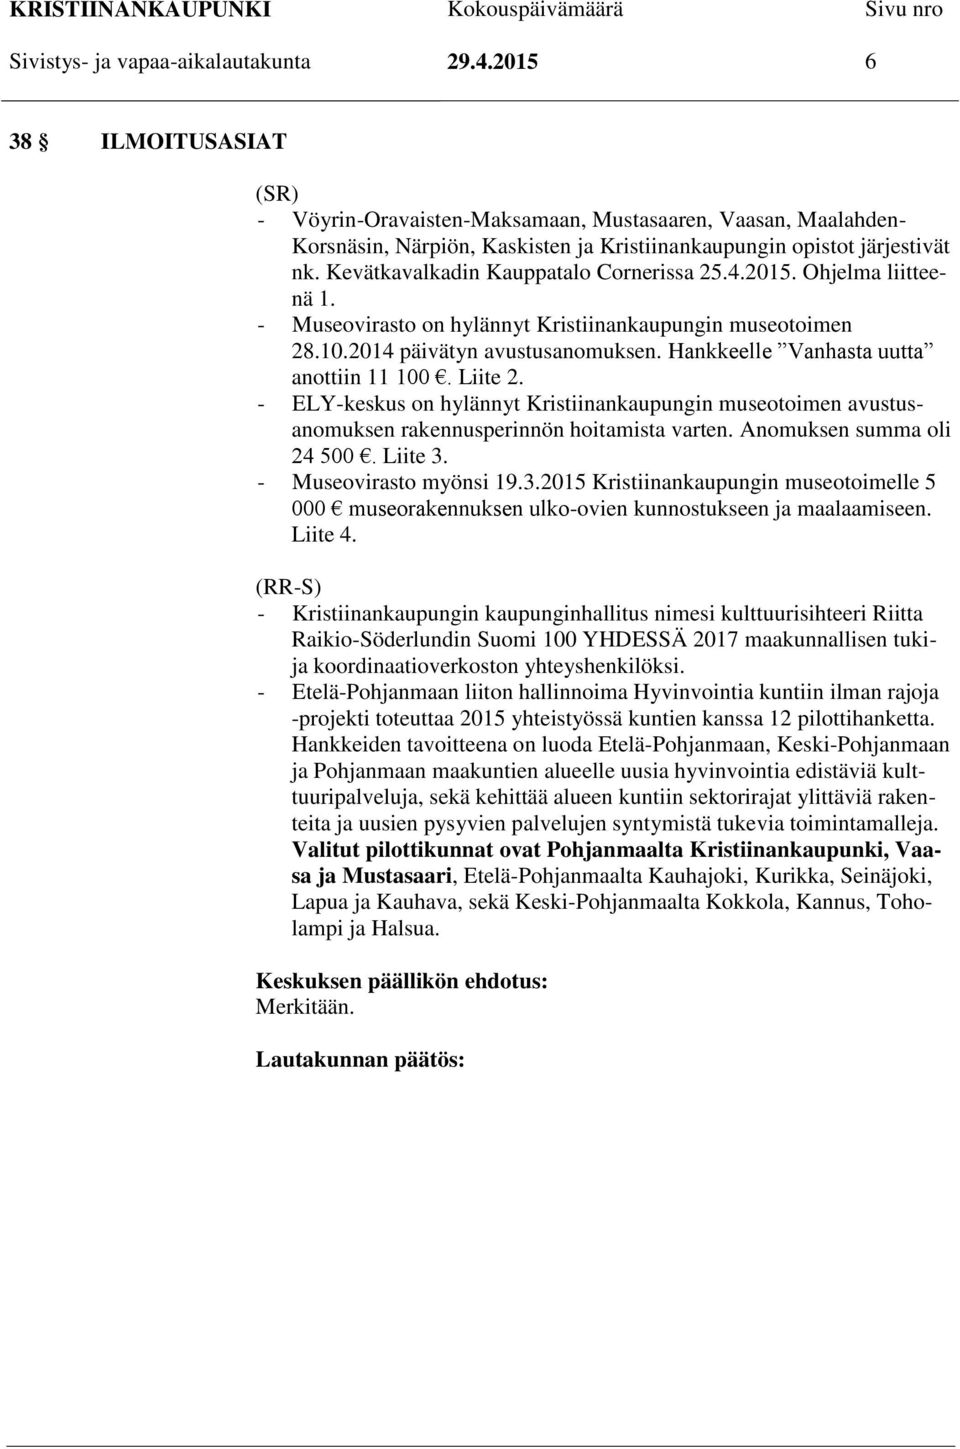 Kevätkavalkadin Kauppatalo Cornerissa 25.4.2015. Ohjelma liitteenä 1. - Museovirasto on hylännyt Kristiinankaupungin museotoimen 28.10.2014 päivätyn avustusanomuksen.